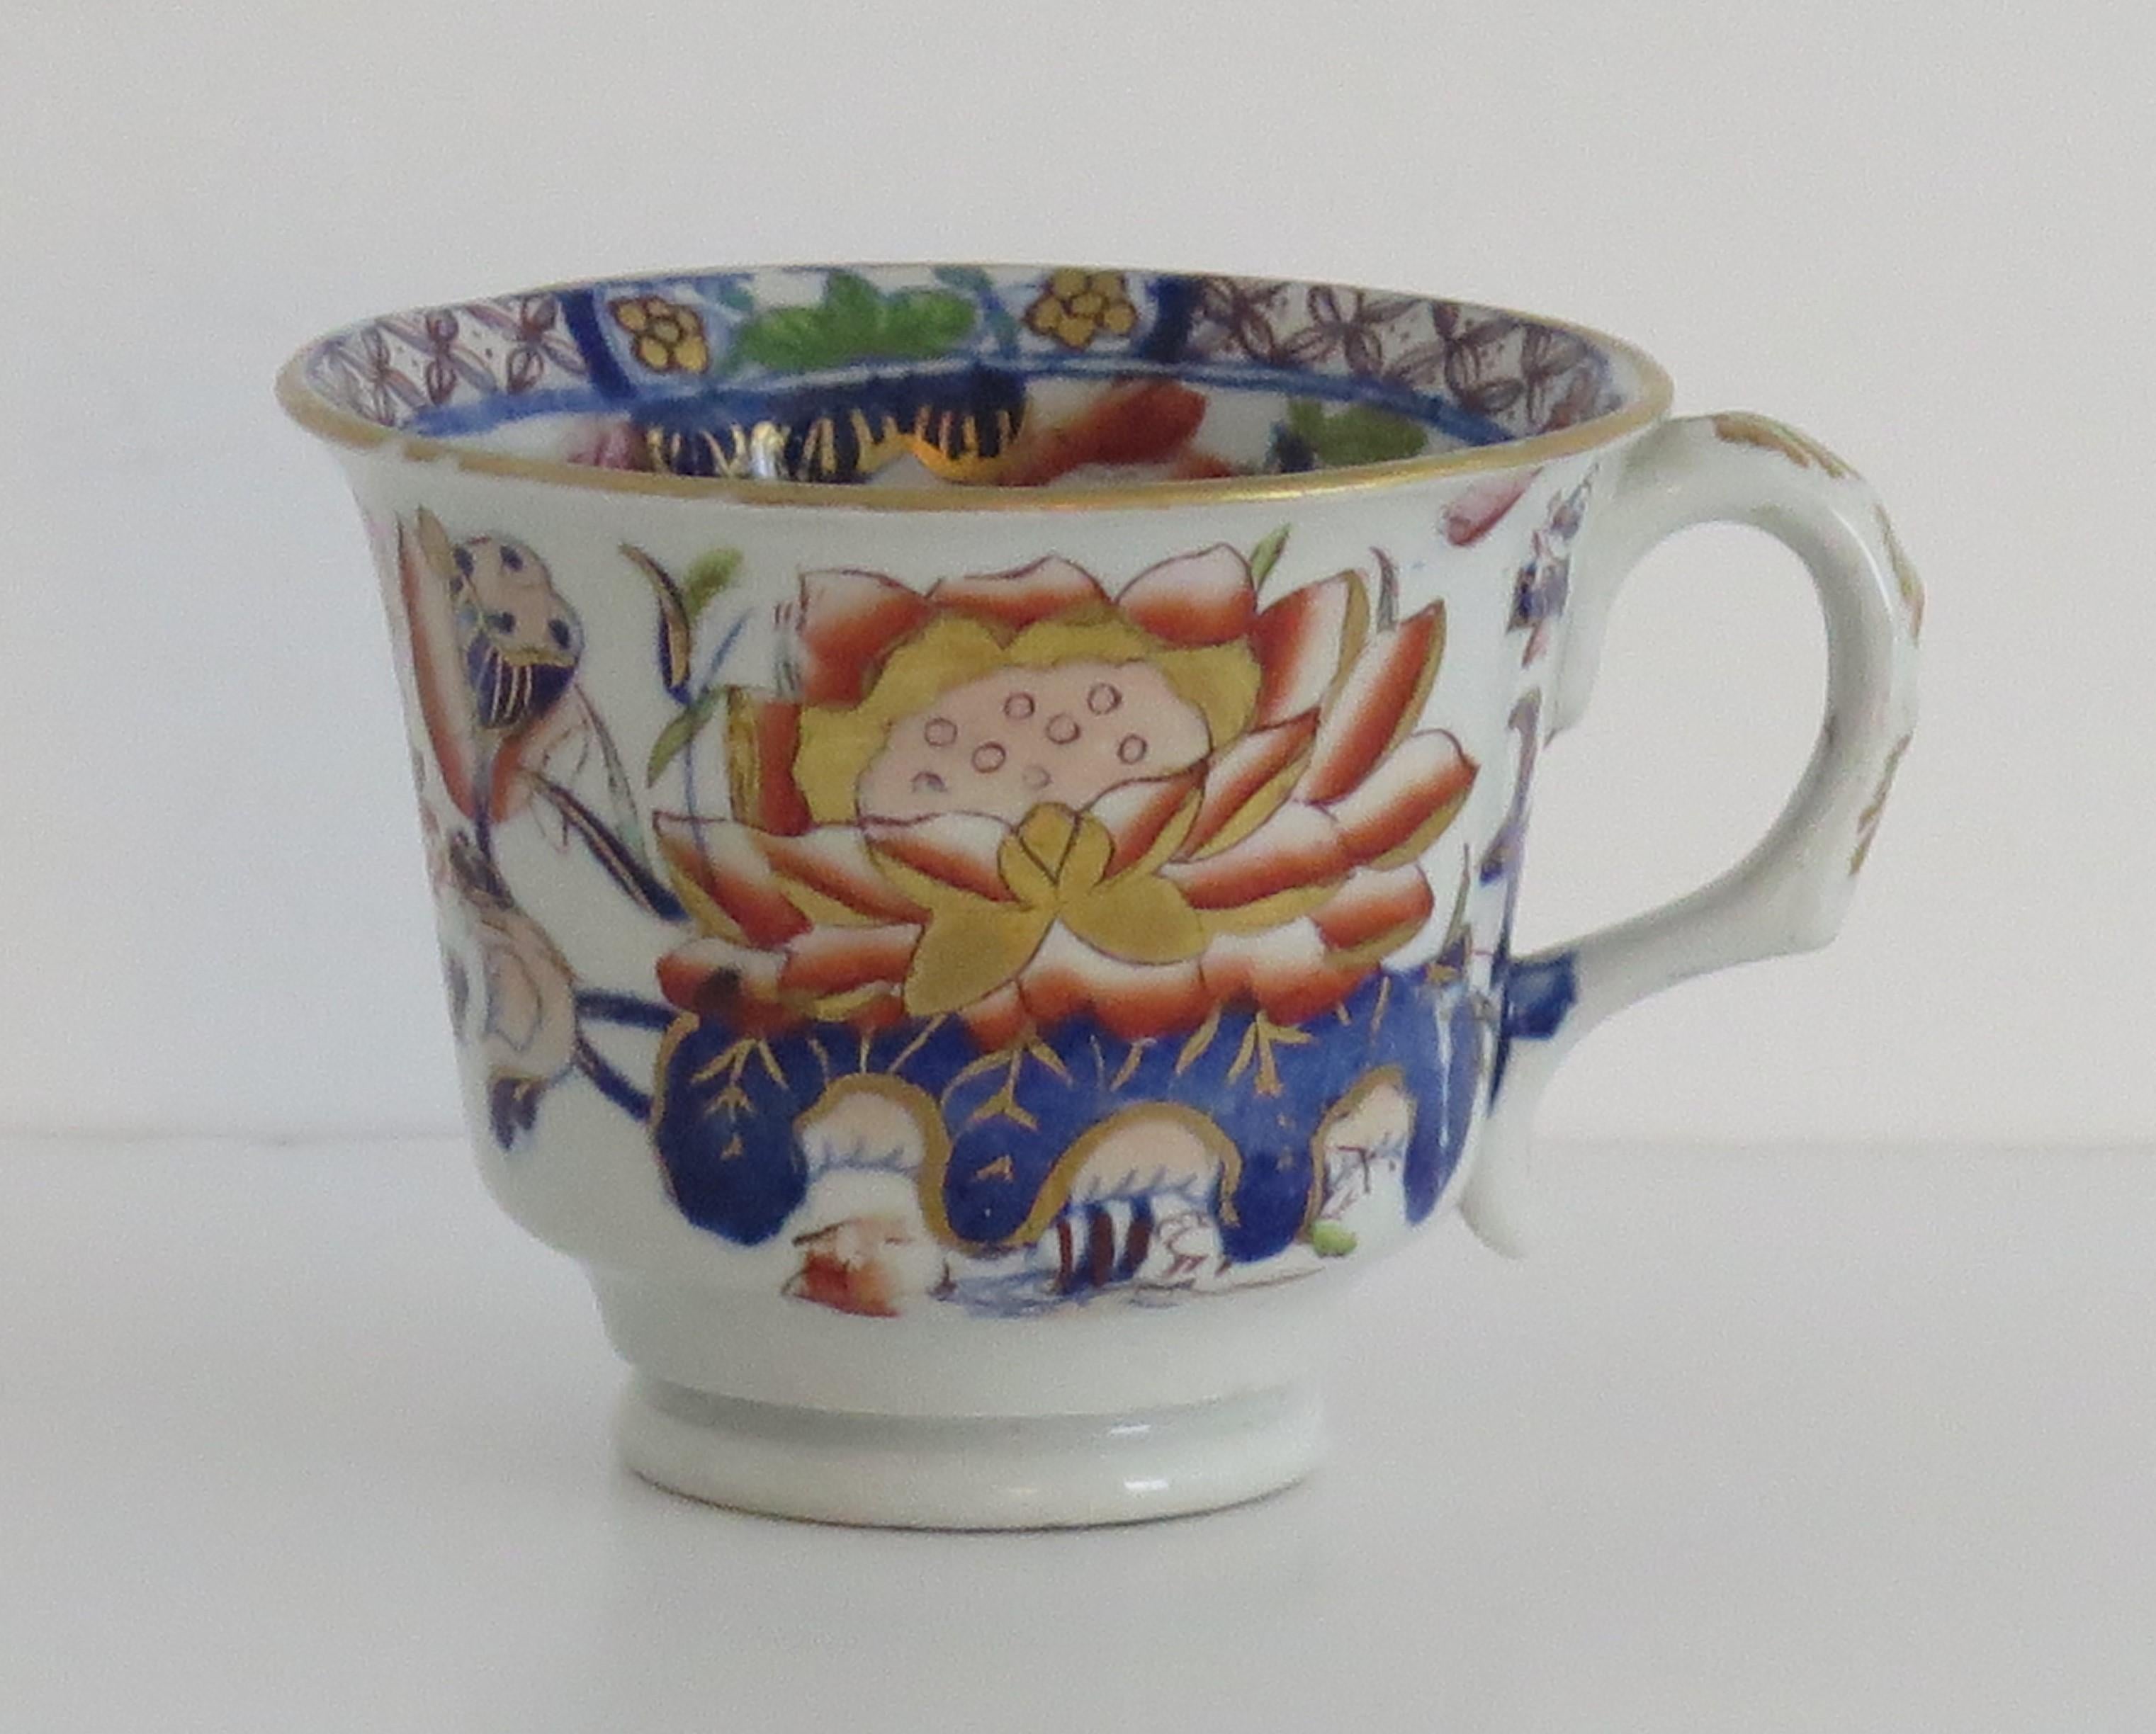 Dies ist eine schöne, frühe Teetasse mit dem begehrten Seerosenmuster, hergestellt von Mason's Ironstone, England, um 1835.

Diese Tasse hat eines der sehr dekorativen und begehrten orientalischen Chinoiserie-Muster namens 